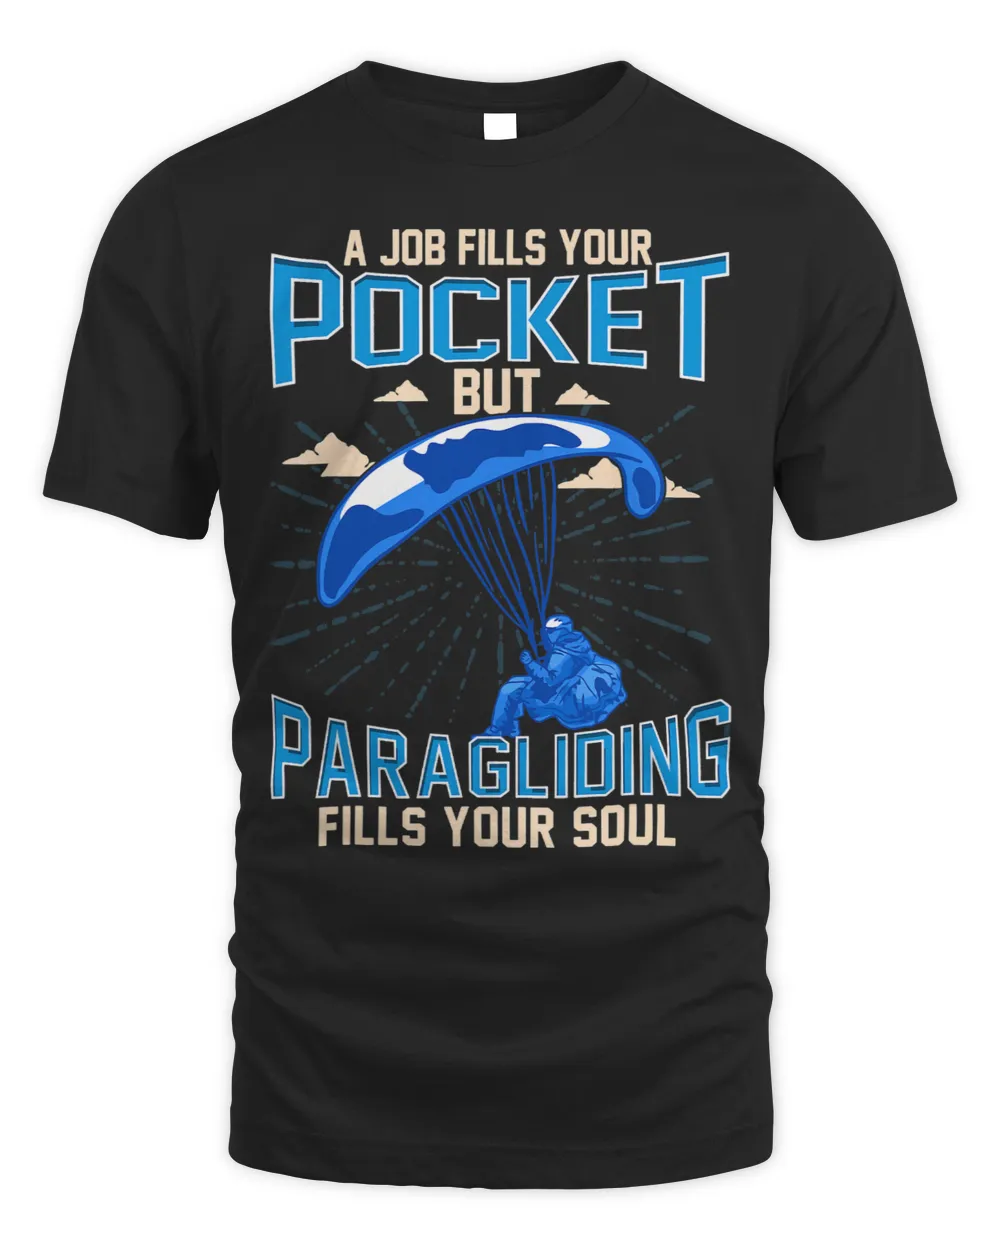 Paragliding Fills Your Soul. Paraglider